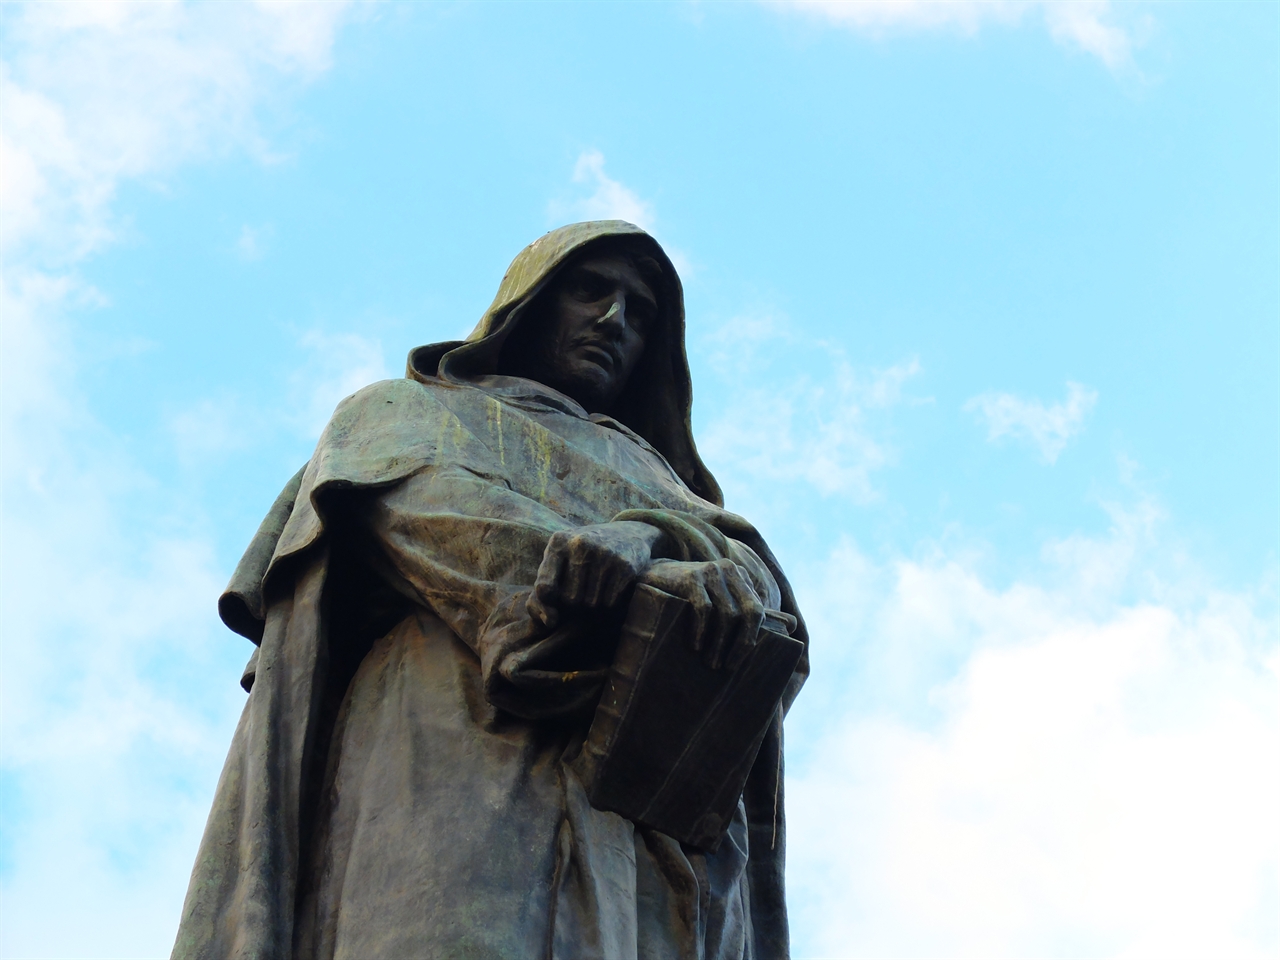 브루노의 죽음 300년 후 빅토르 위고와 입센, 바쿠닌 등이 주도하여 건립한 브루노의 동상. 자유로운 사상을 위해 순교한 그의 정신이 느껴집니다. 